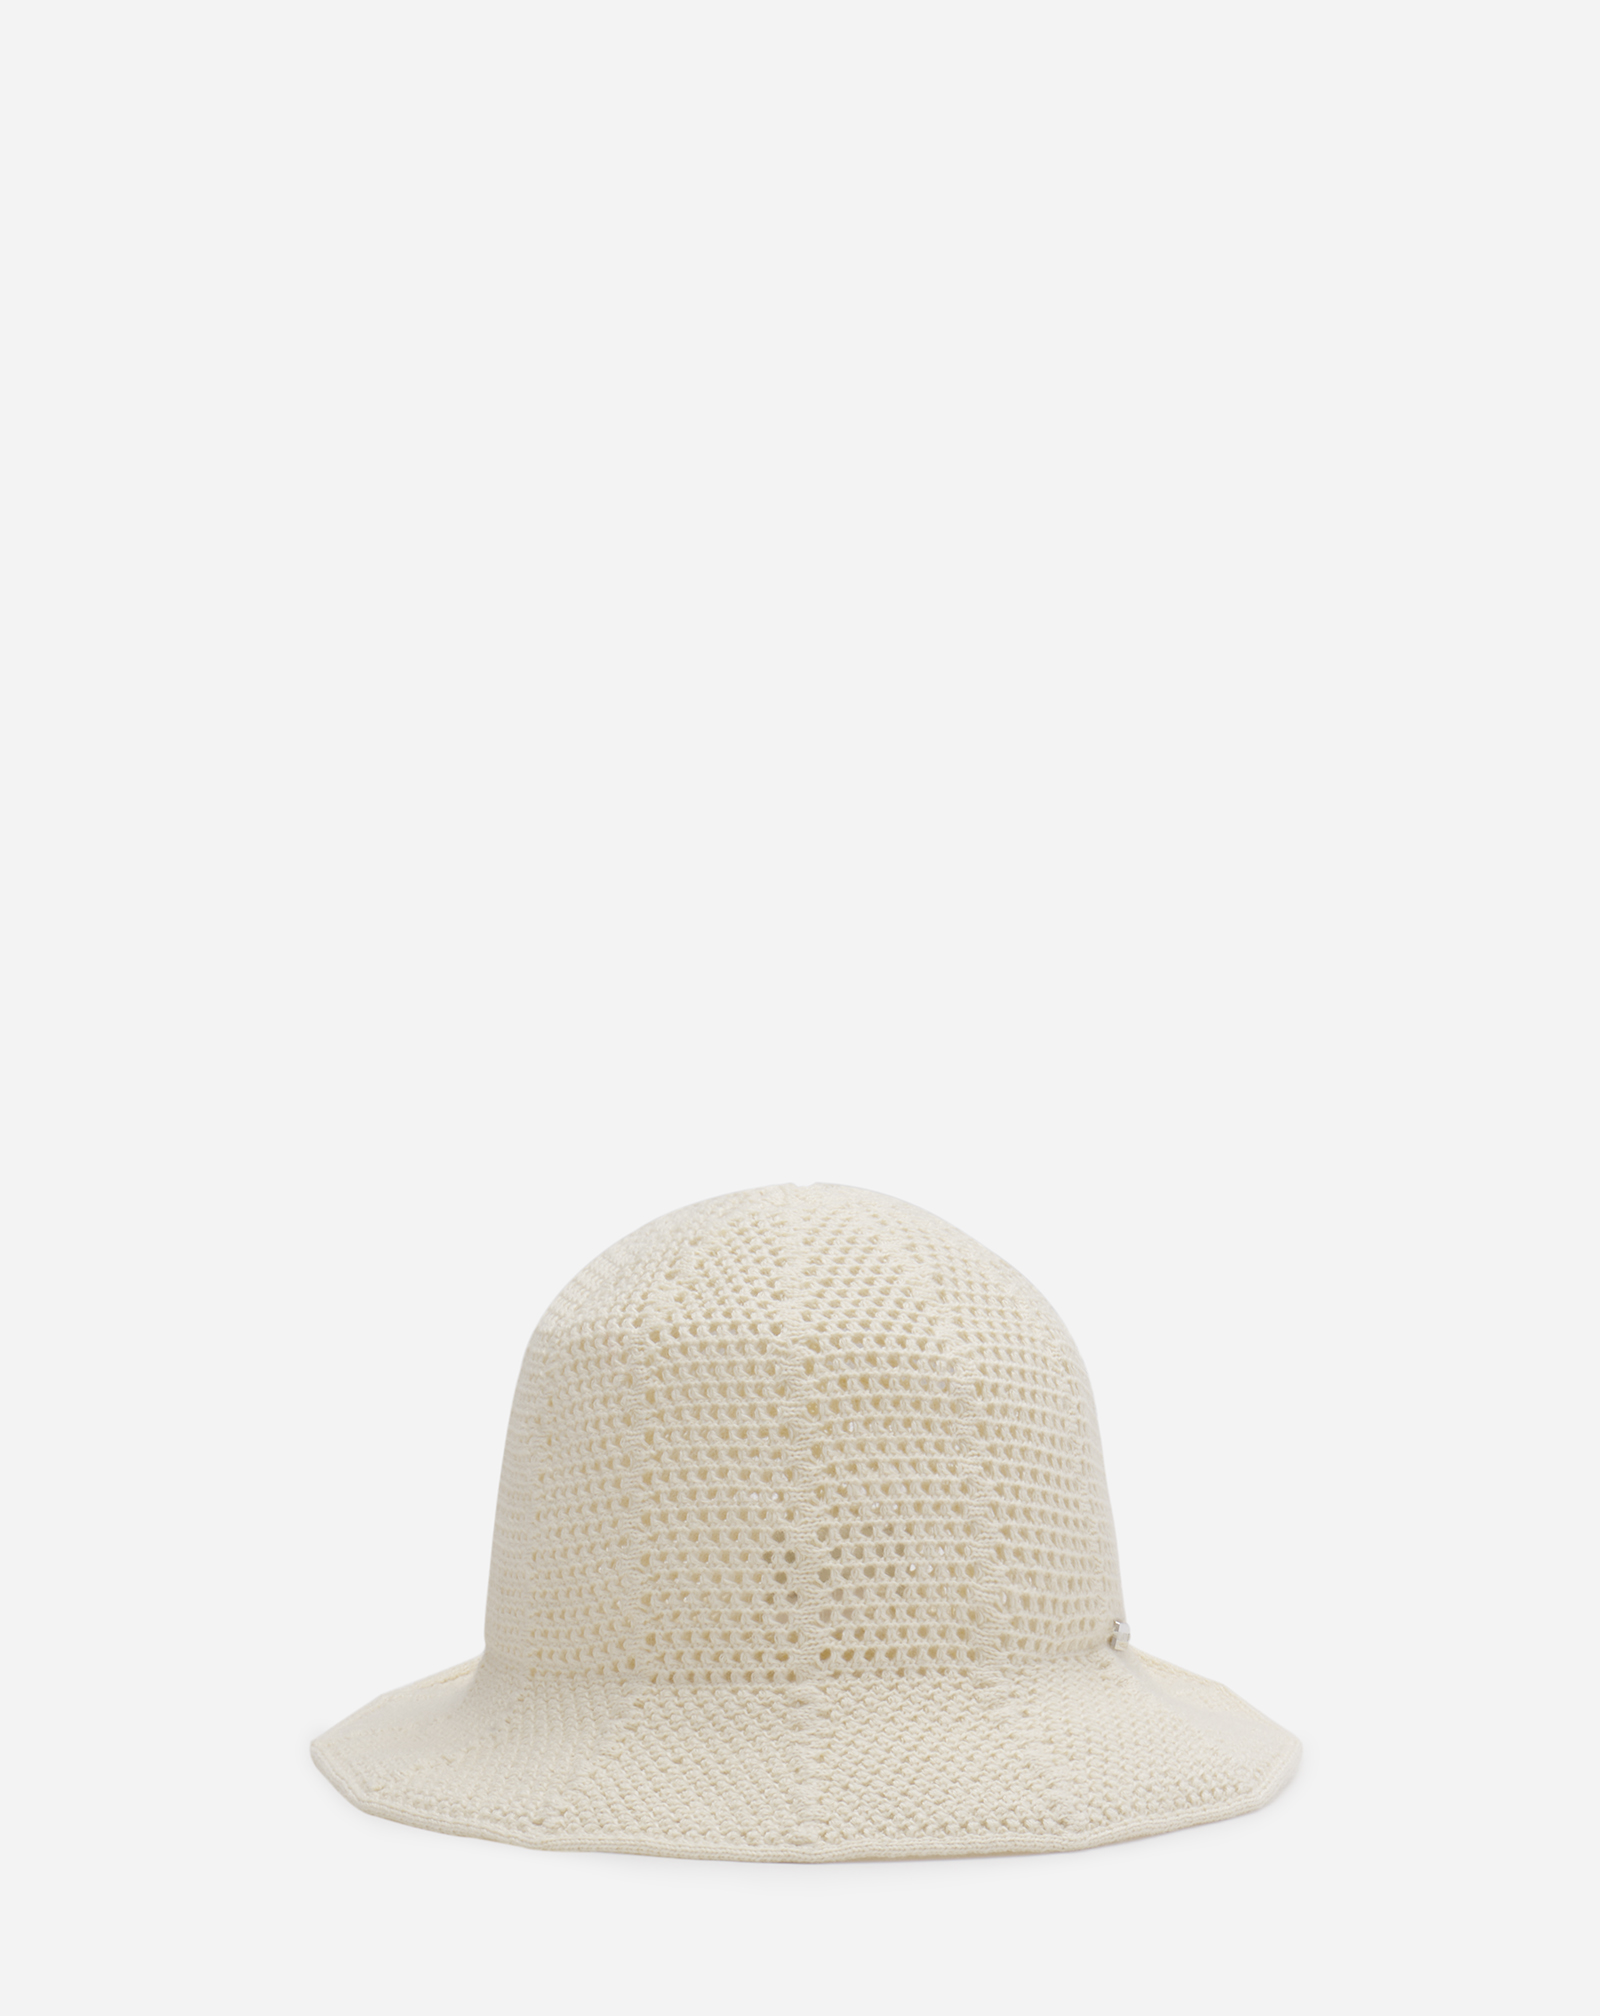 Lanvin Crochet Bucket Hat For Women In White